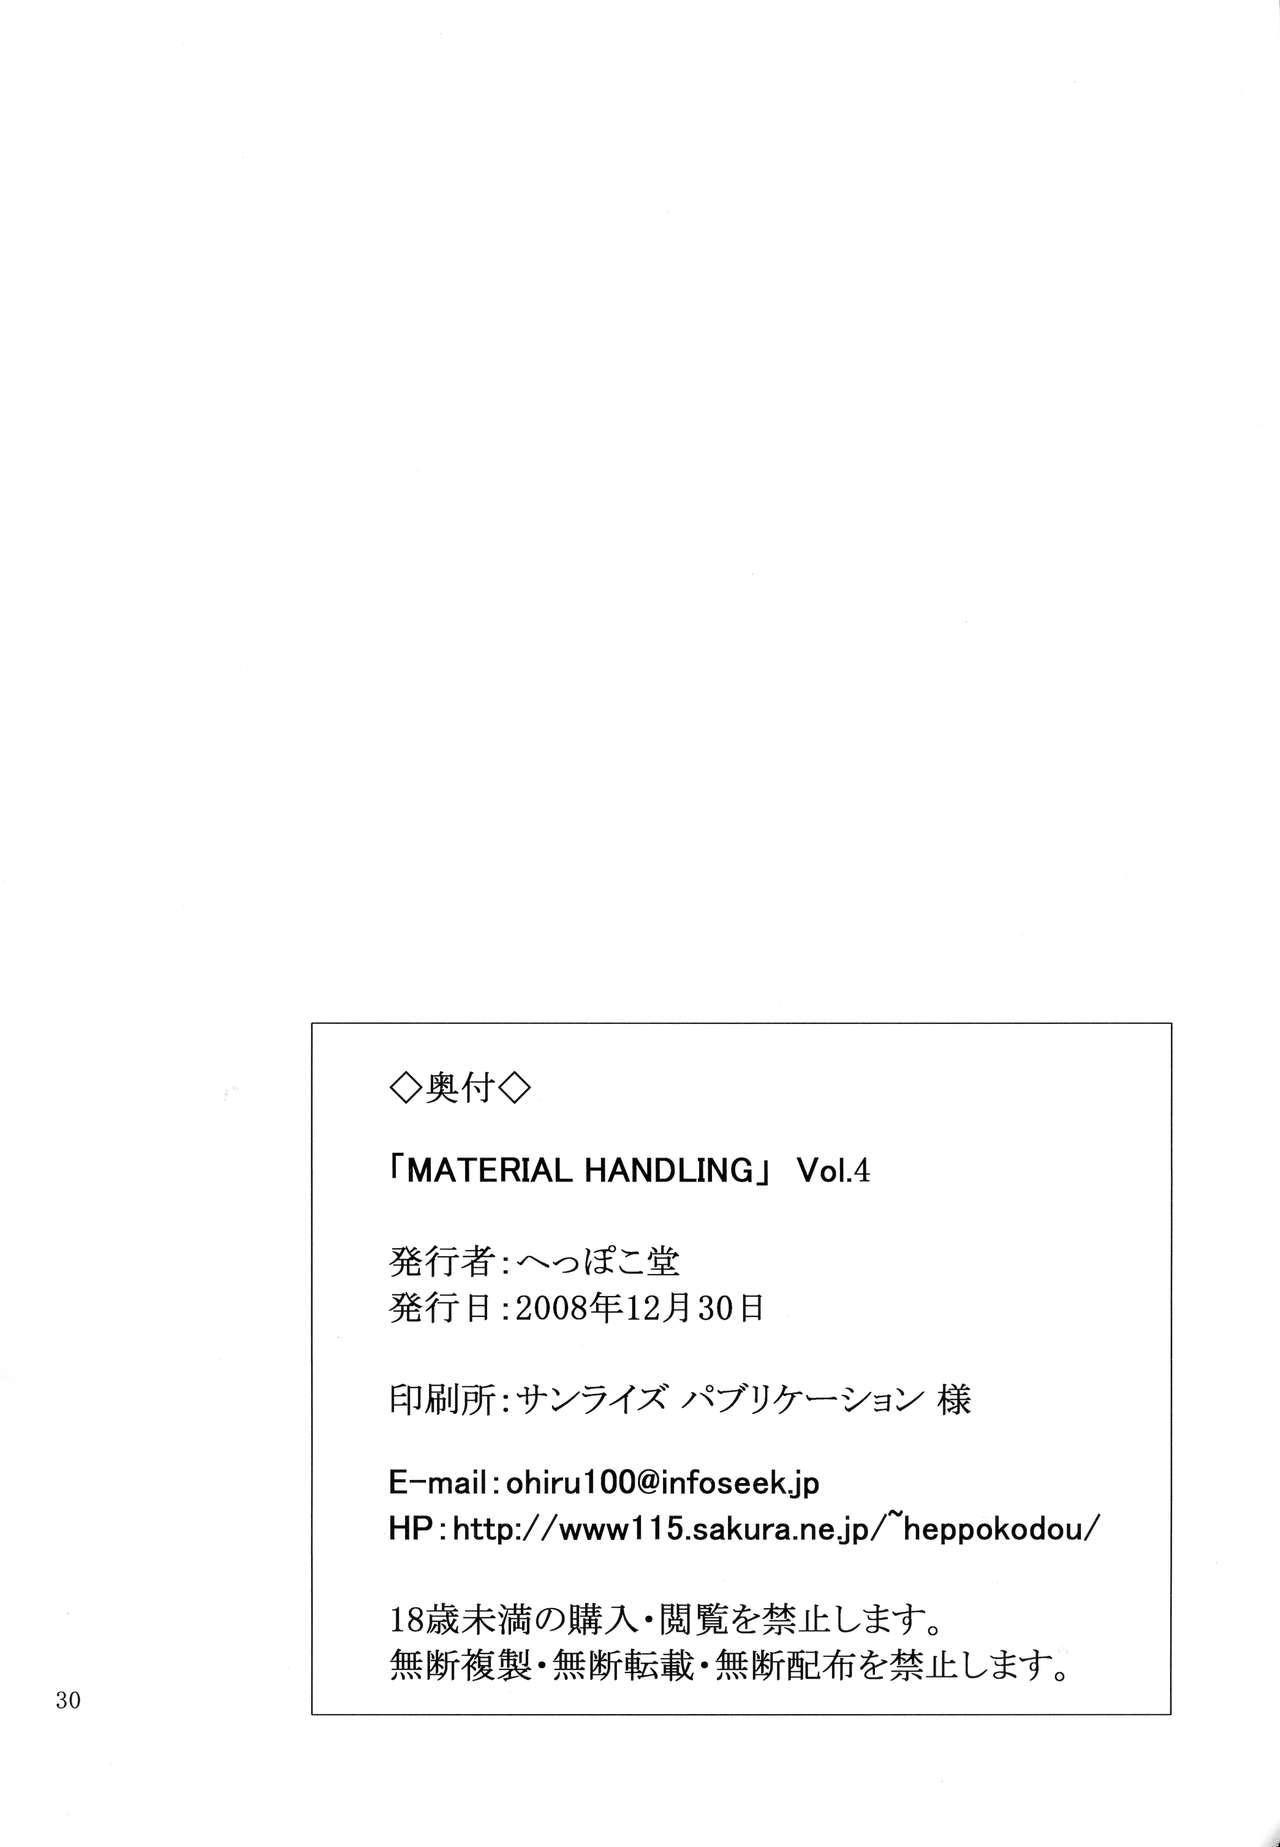 Material Handling Vol.4 30